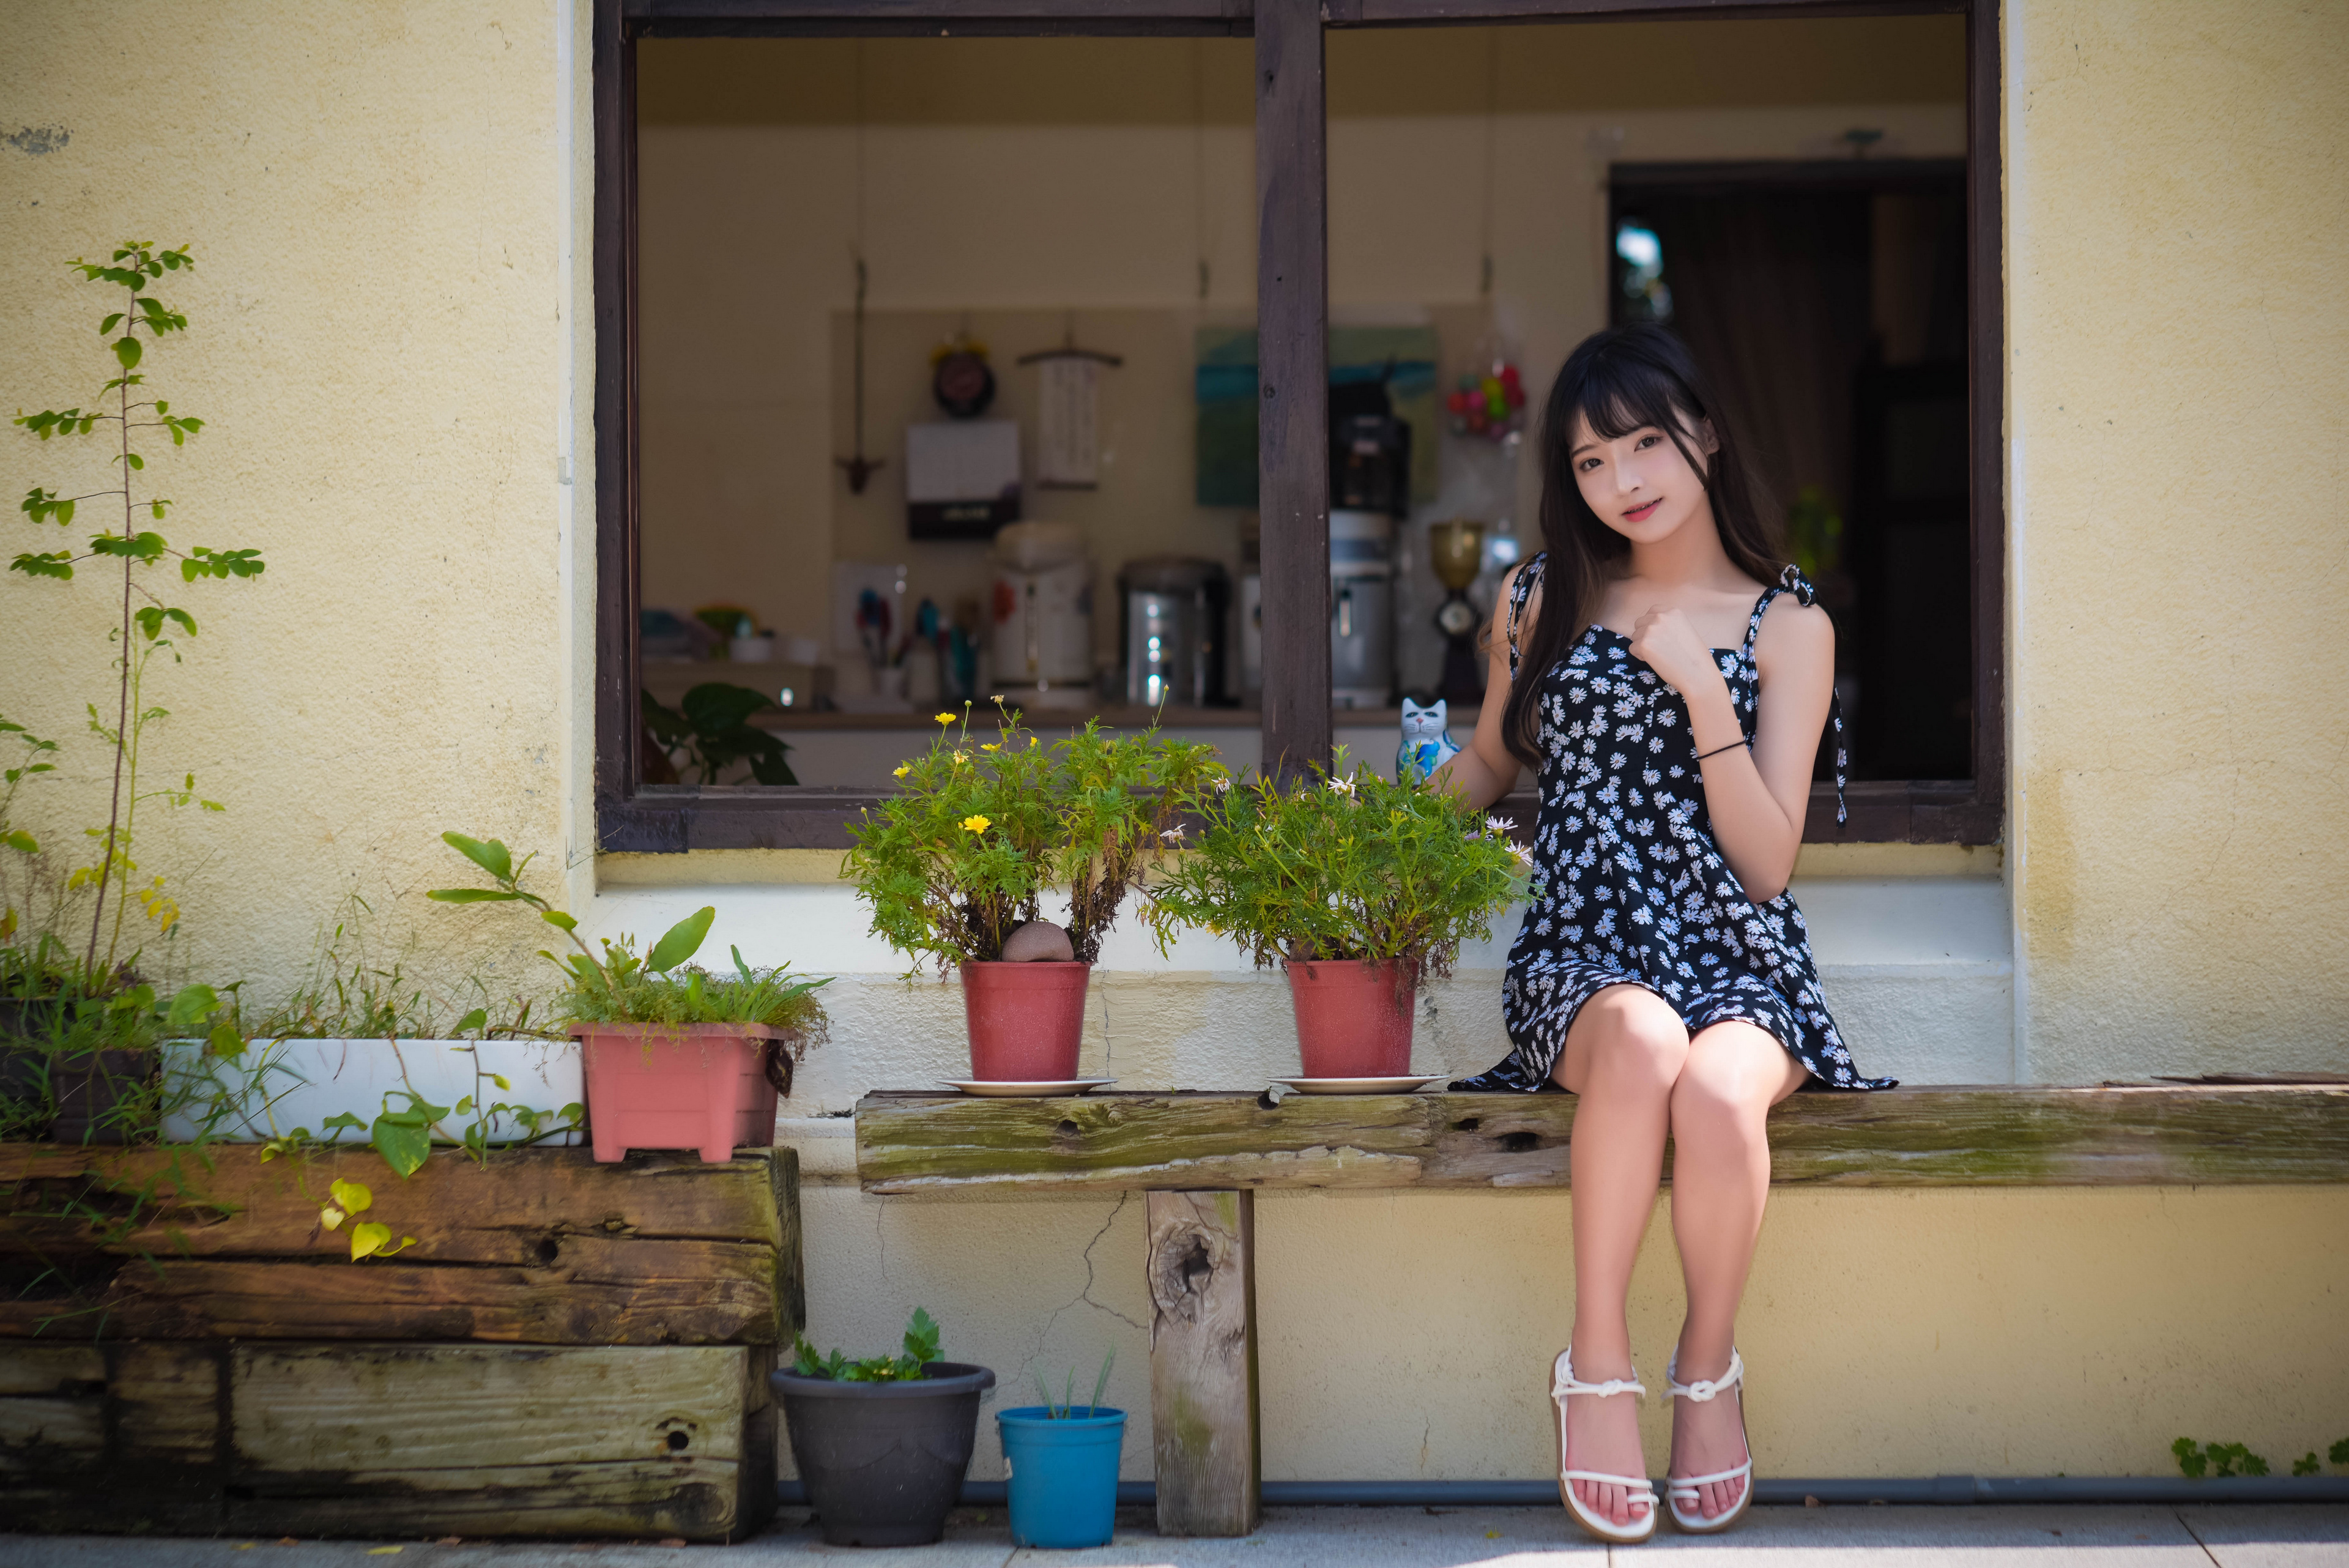 Asian Model Women Long Hair Dark Hair Sitting Flower Dress 3840x2563